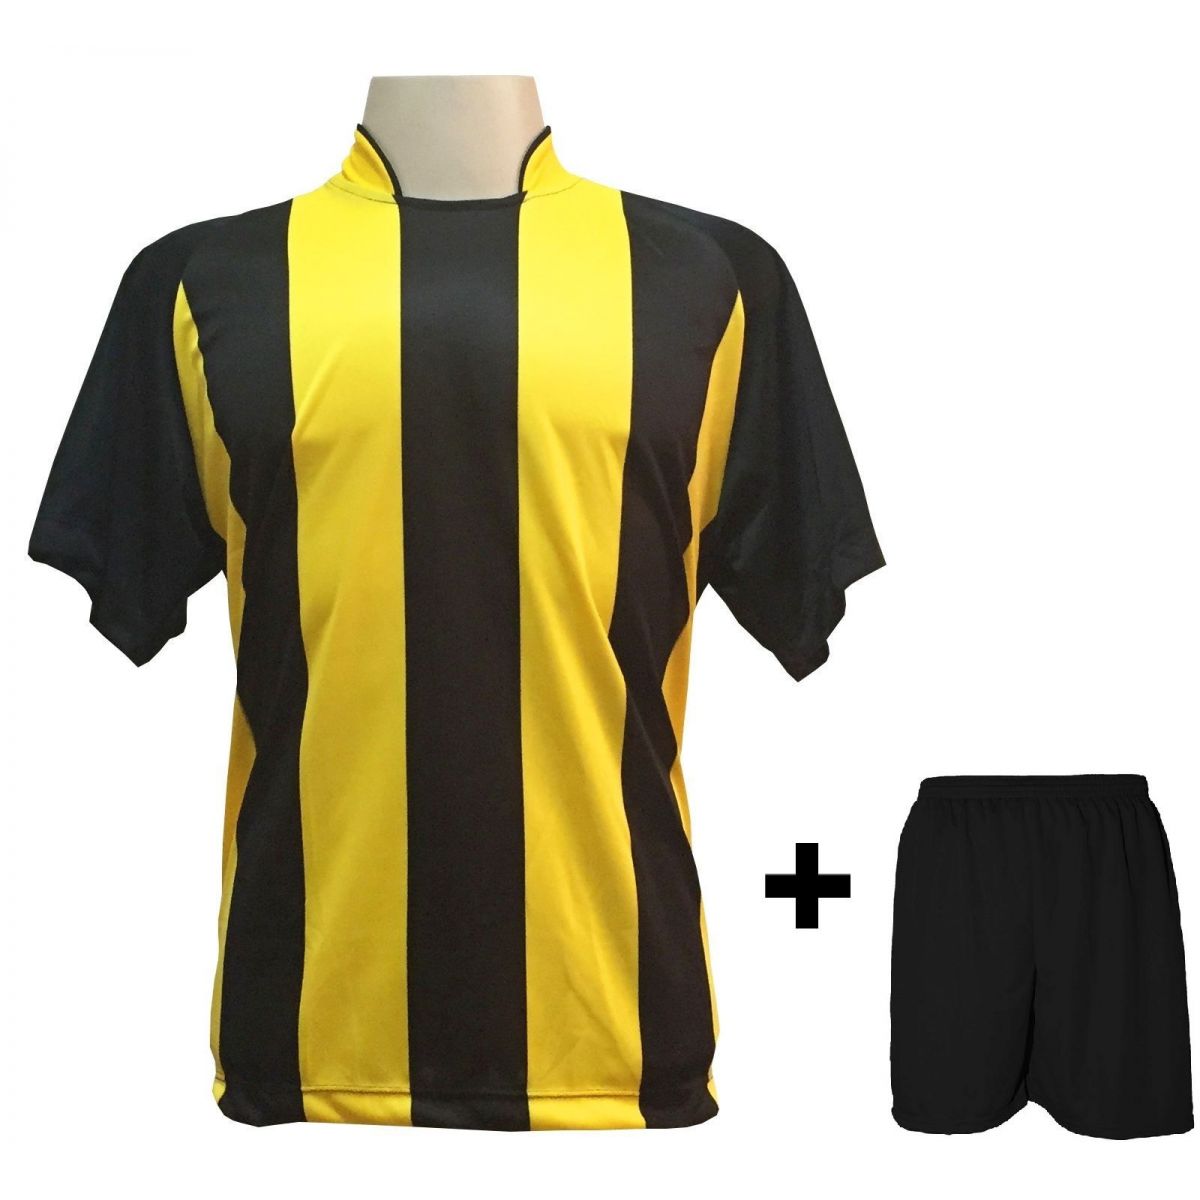 Uniforme Esportivo com 18 camisas modelo Milan Preto/Amarelo + 18 calções modelo Madrid Preto + Brindes